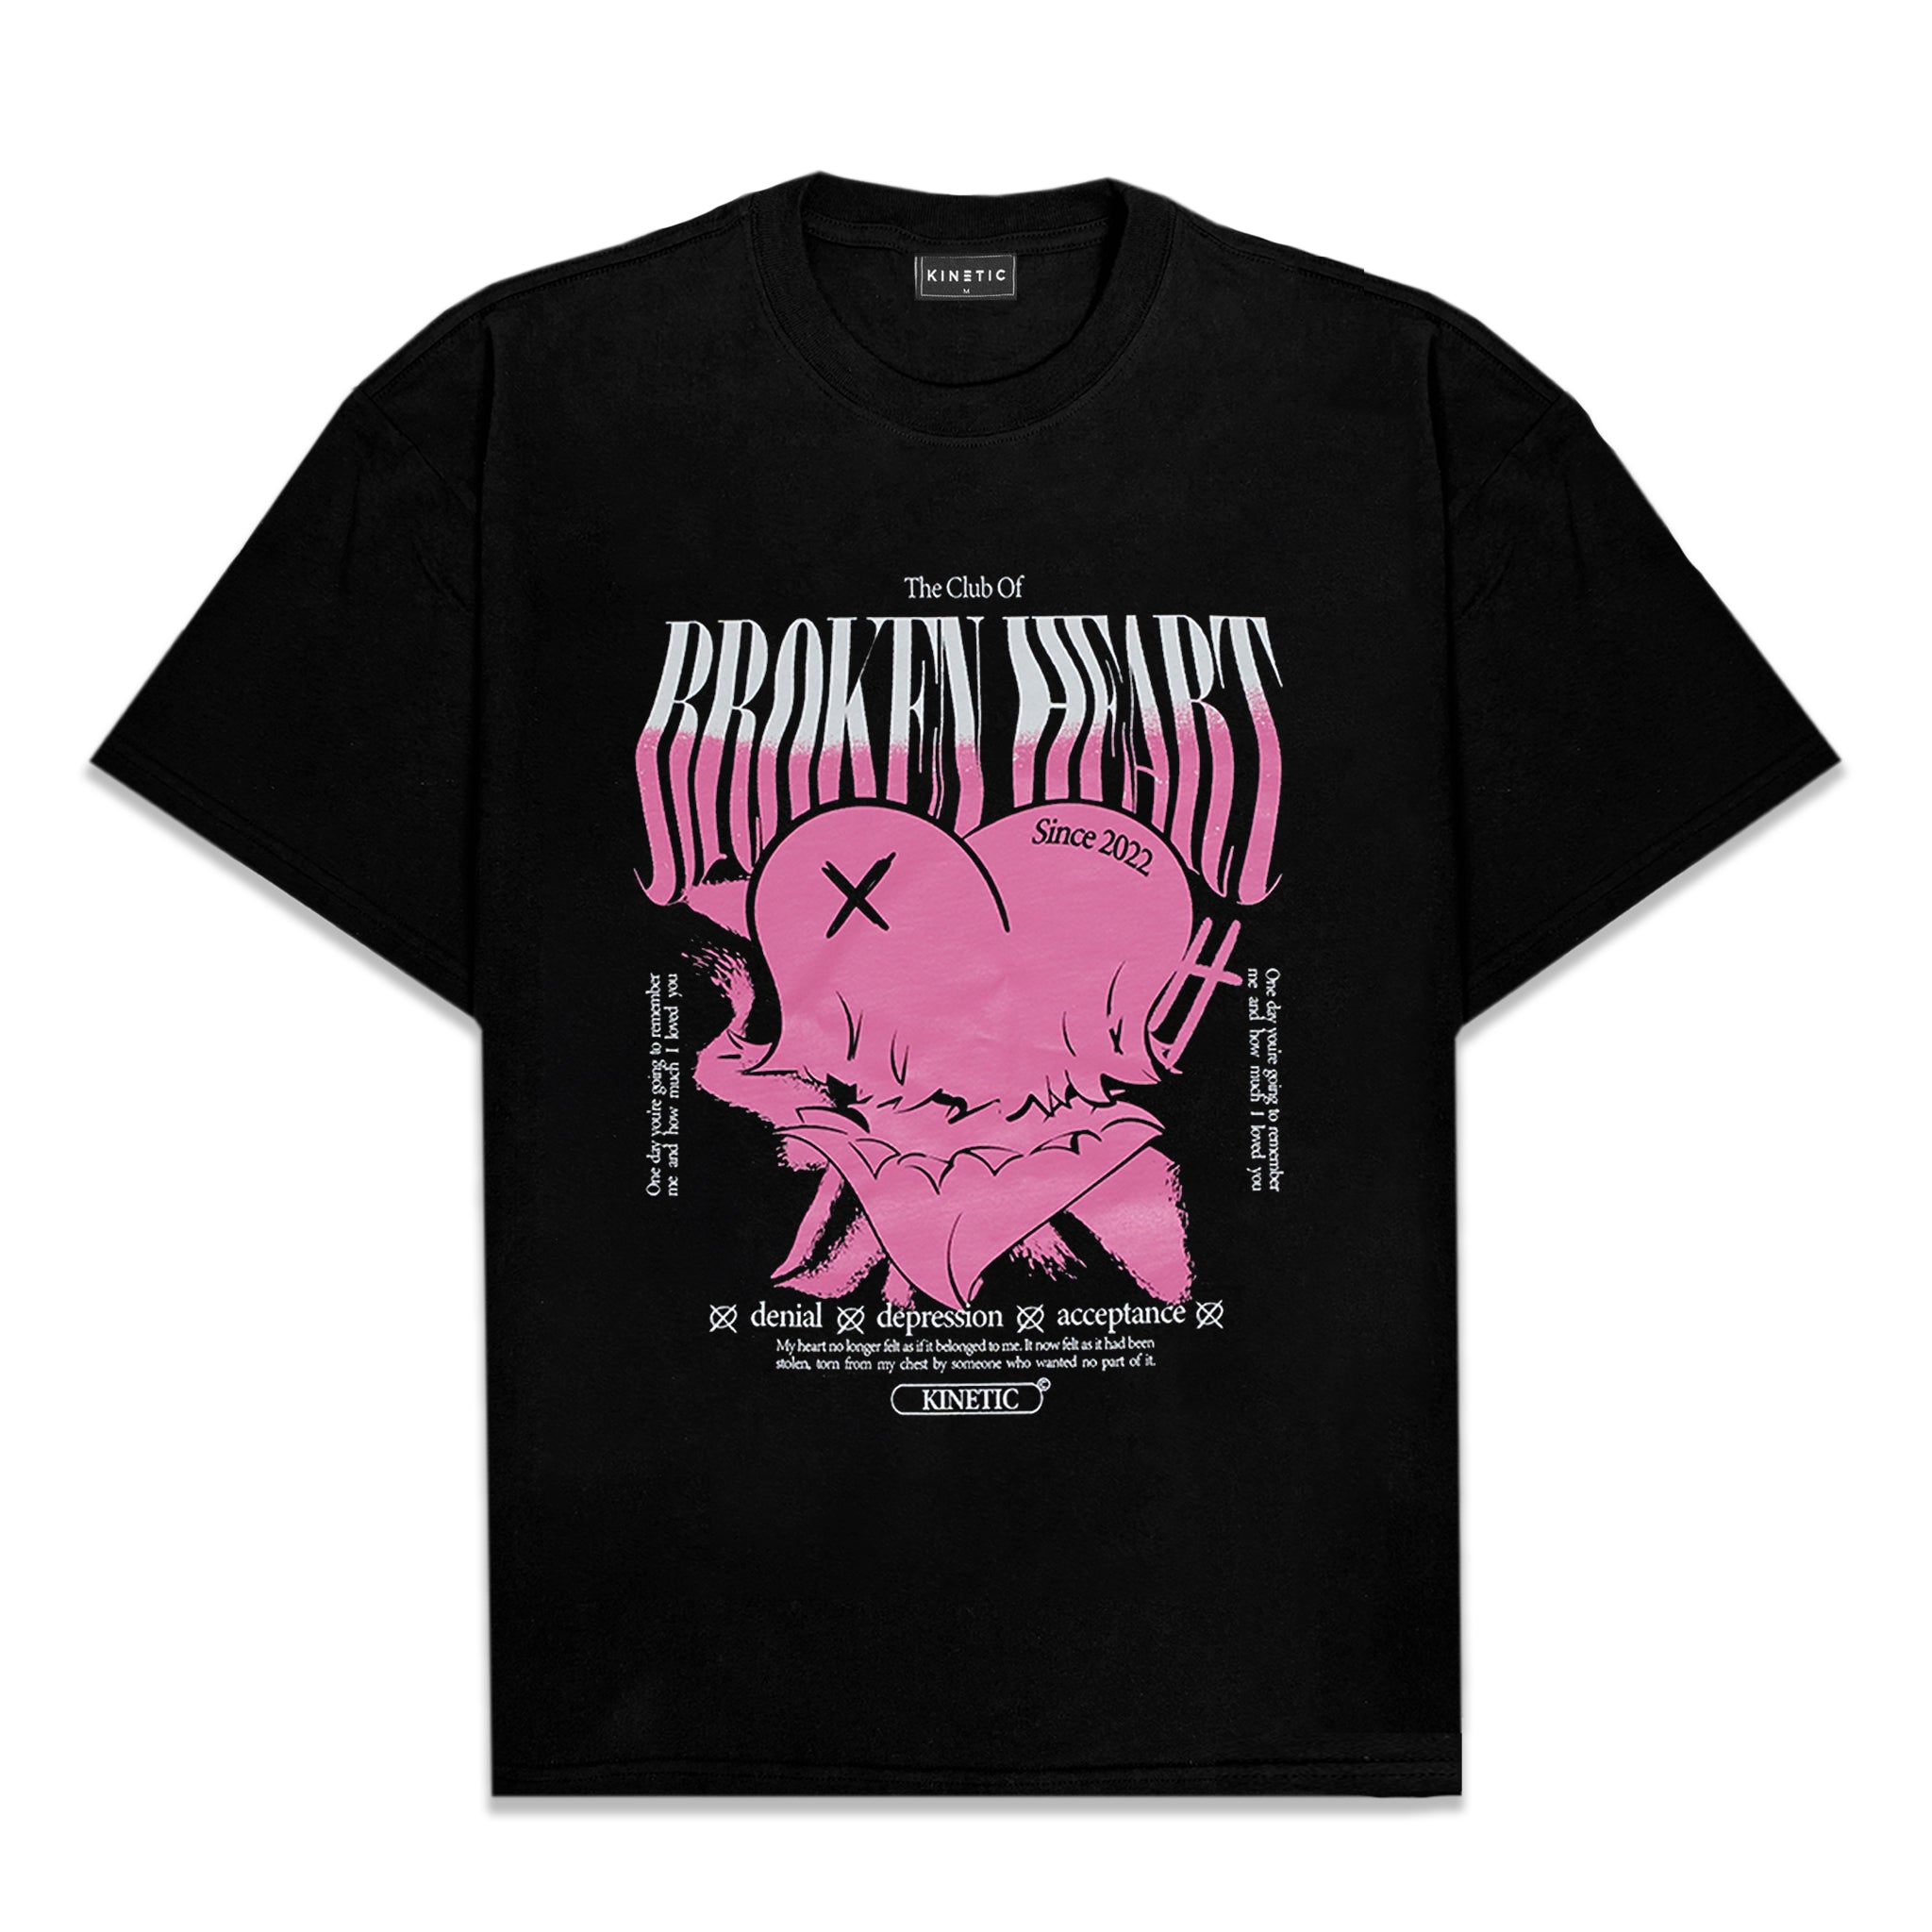 The Broken Heart Club Oversized Shirt